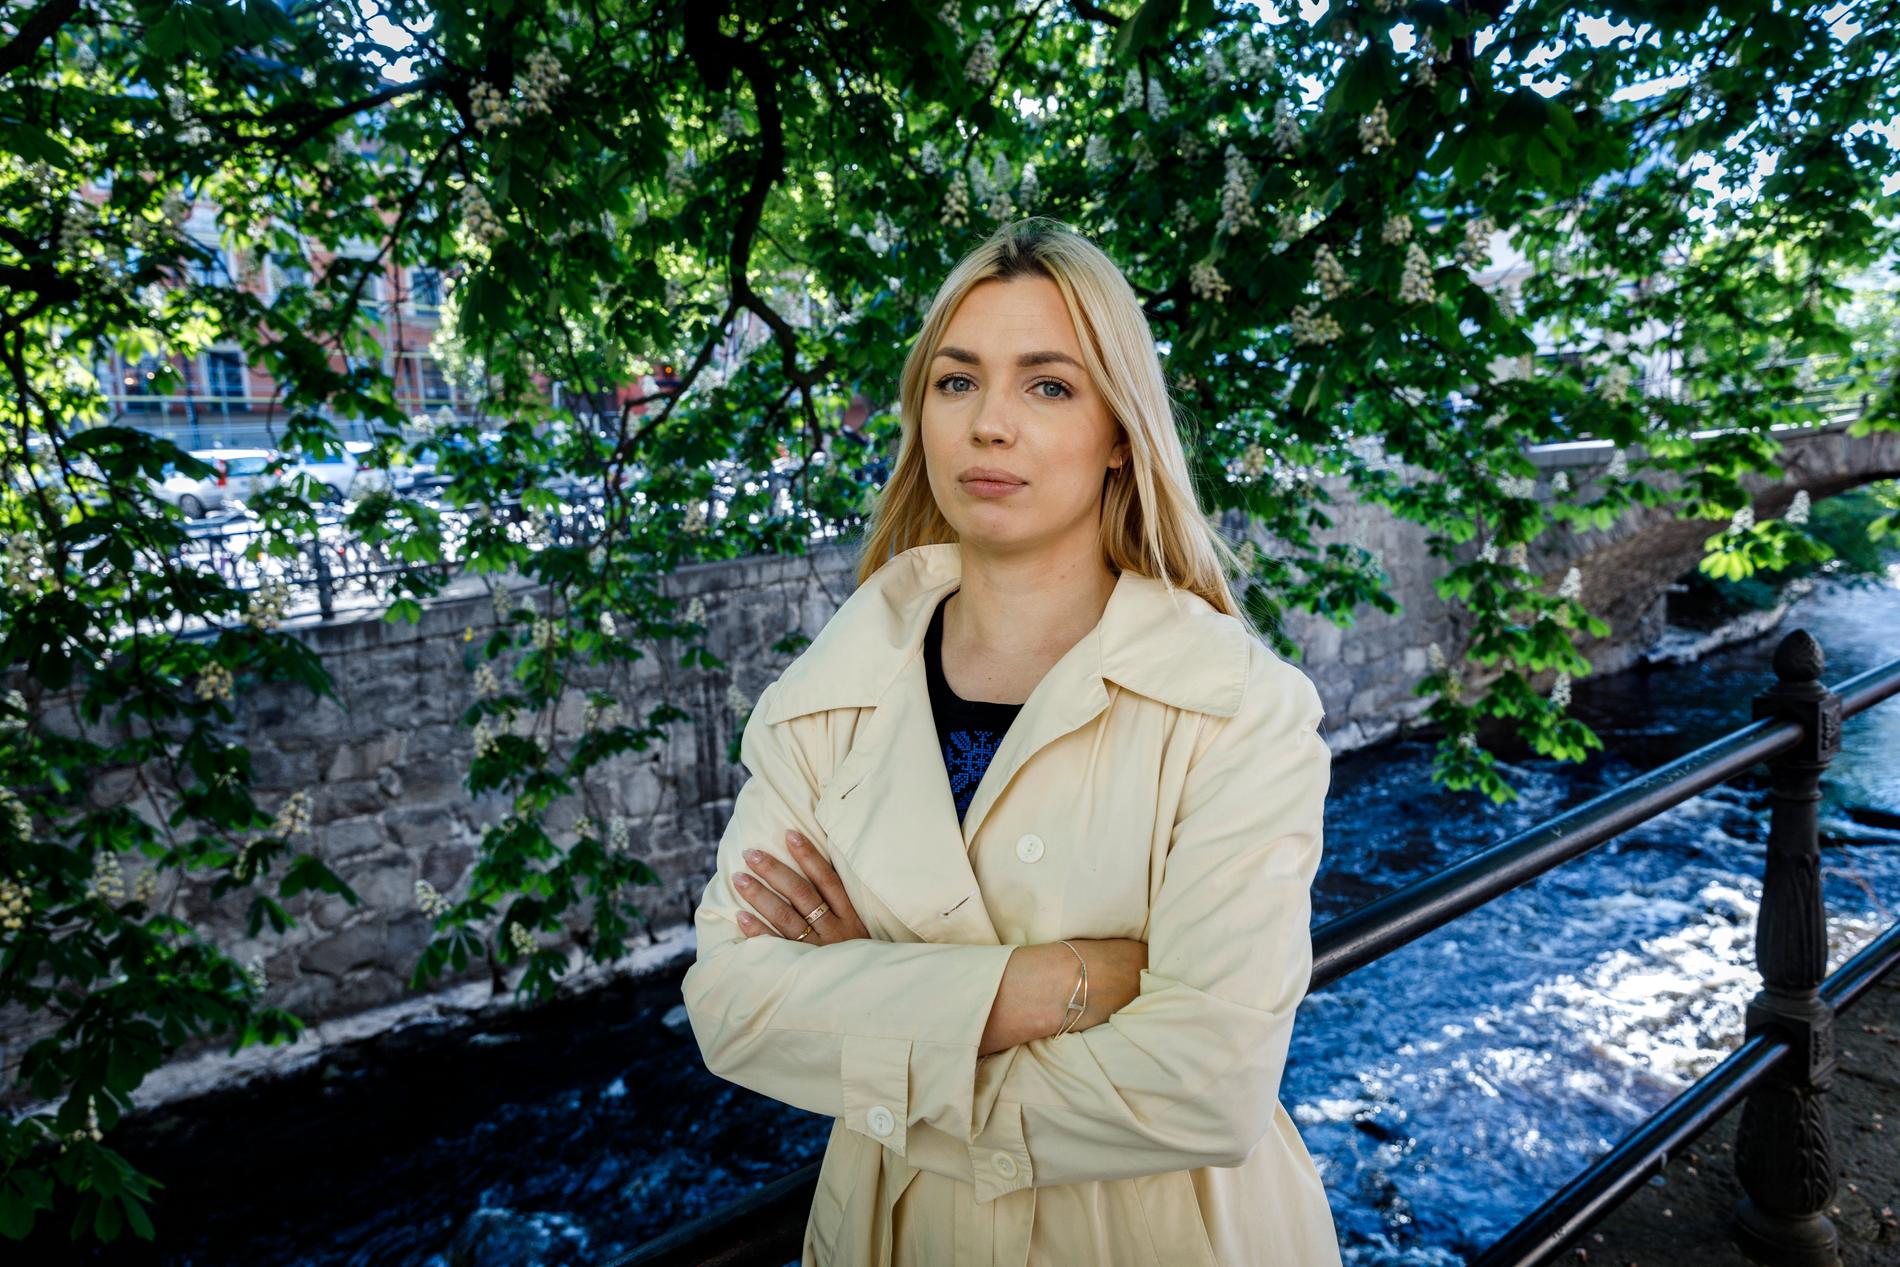 Belarusiska oppositionsaktivisten Alesia Rudnik är pessimistisk inför hemlandets framtid. I måndags framträdde hon på ett seminarium vid Uppsala universitet.